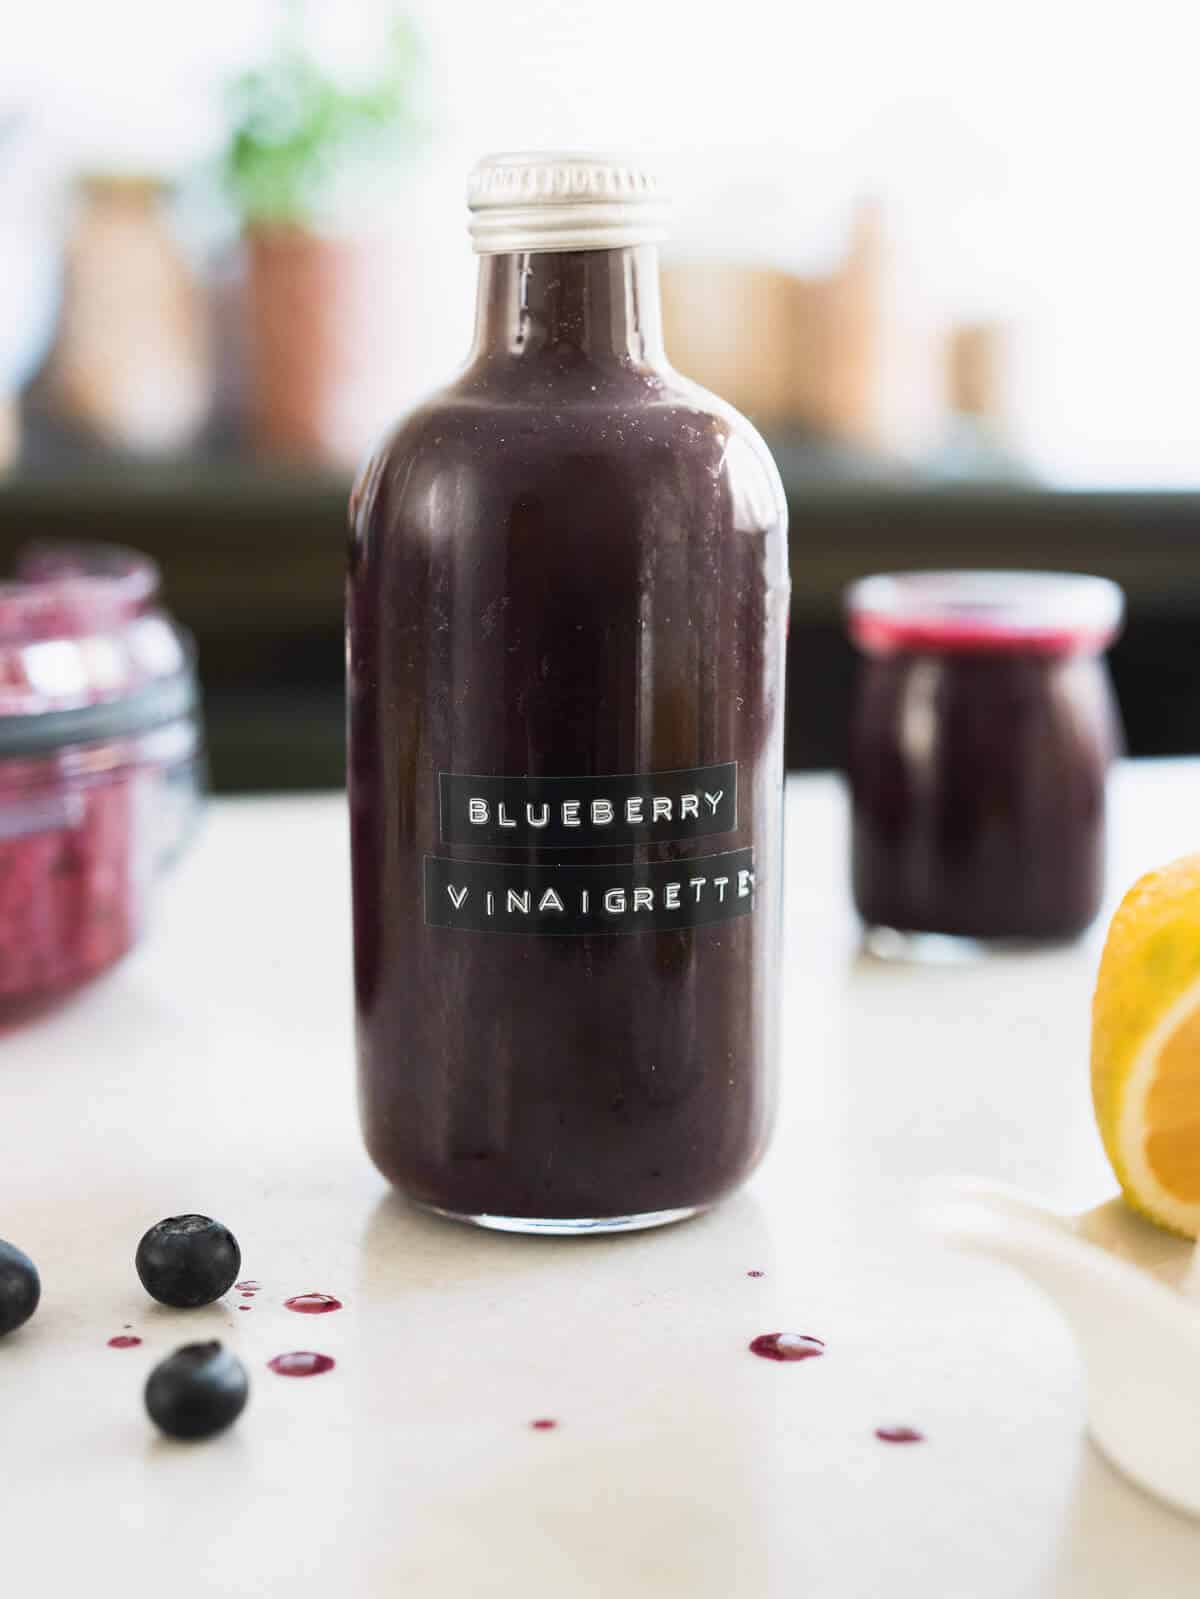 balsamic blueberry vinaigrette salad dressing in a bottle.